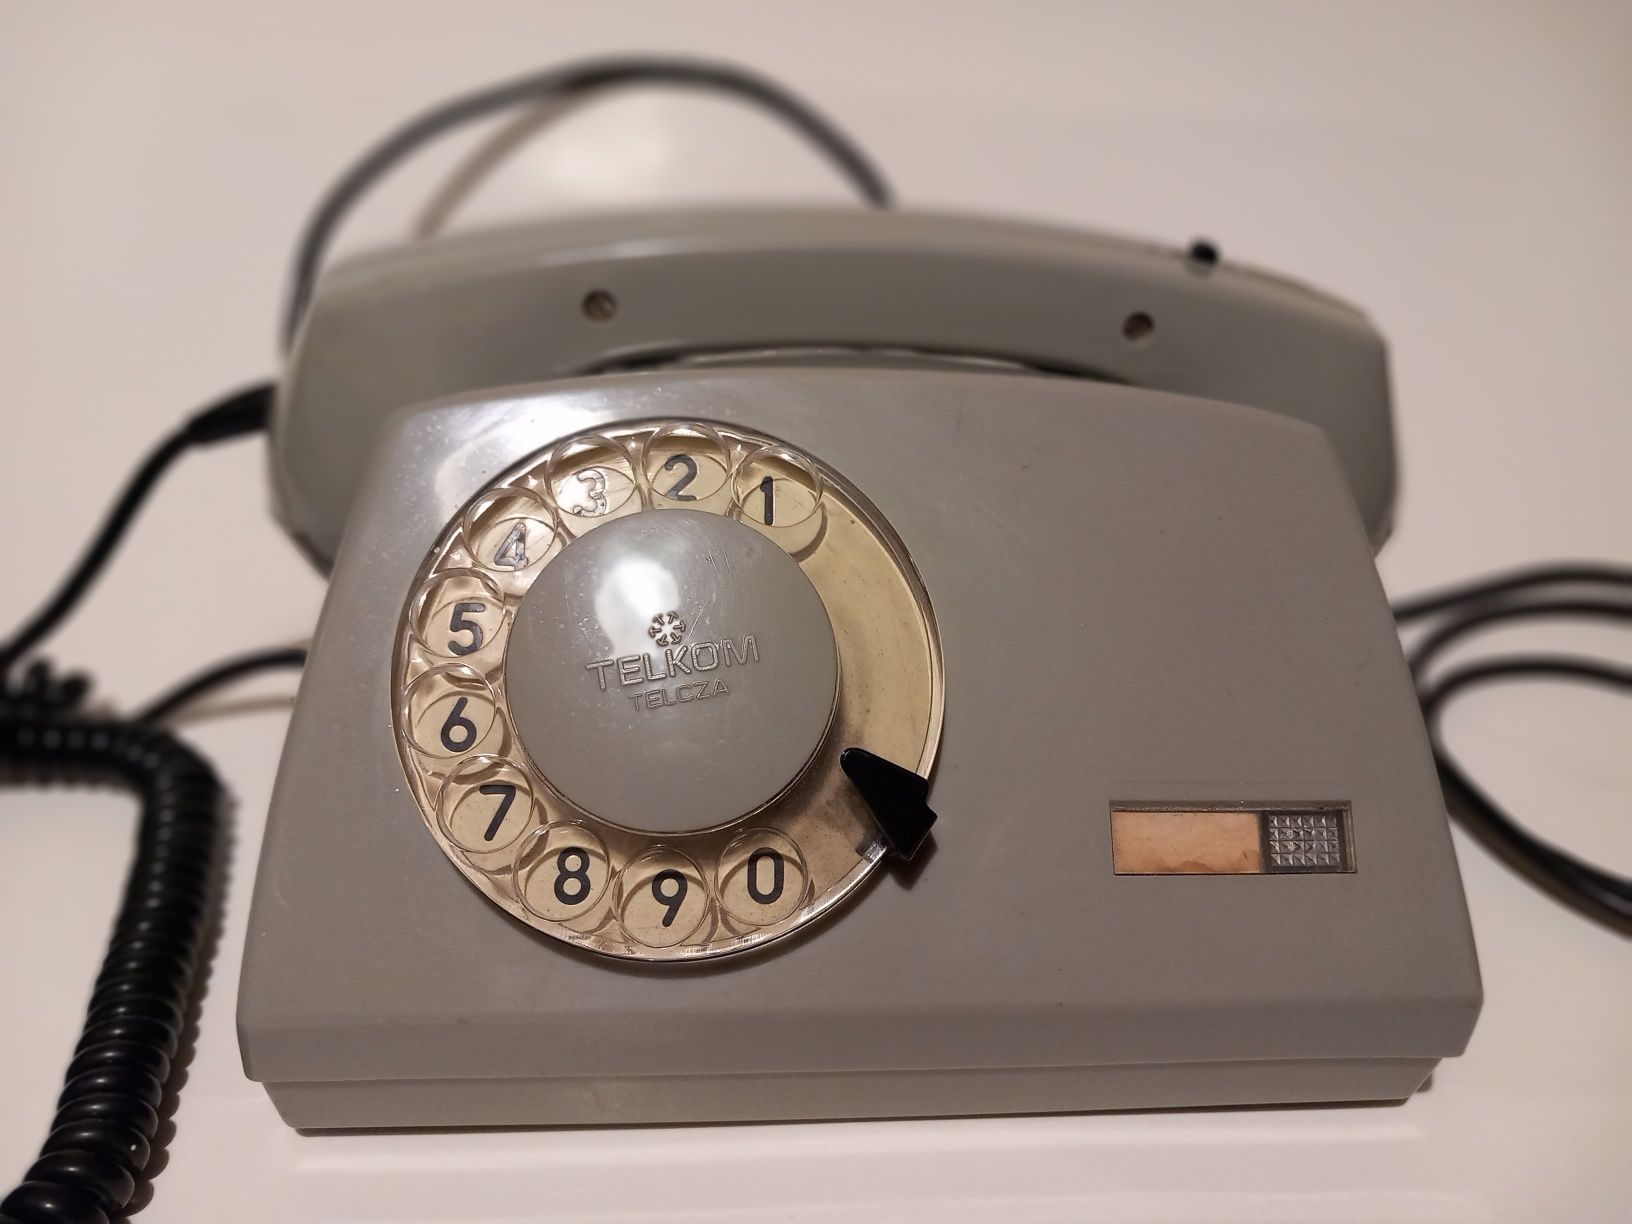 Telefon Atos z lat 80-tych